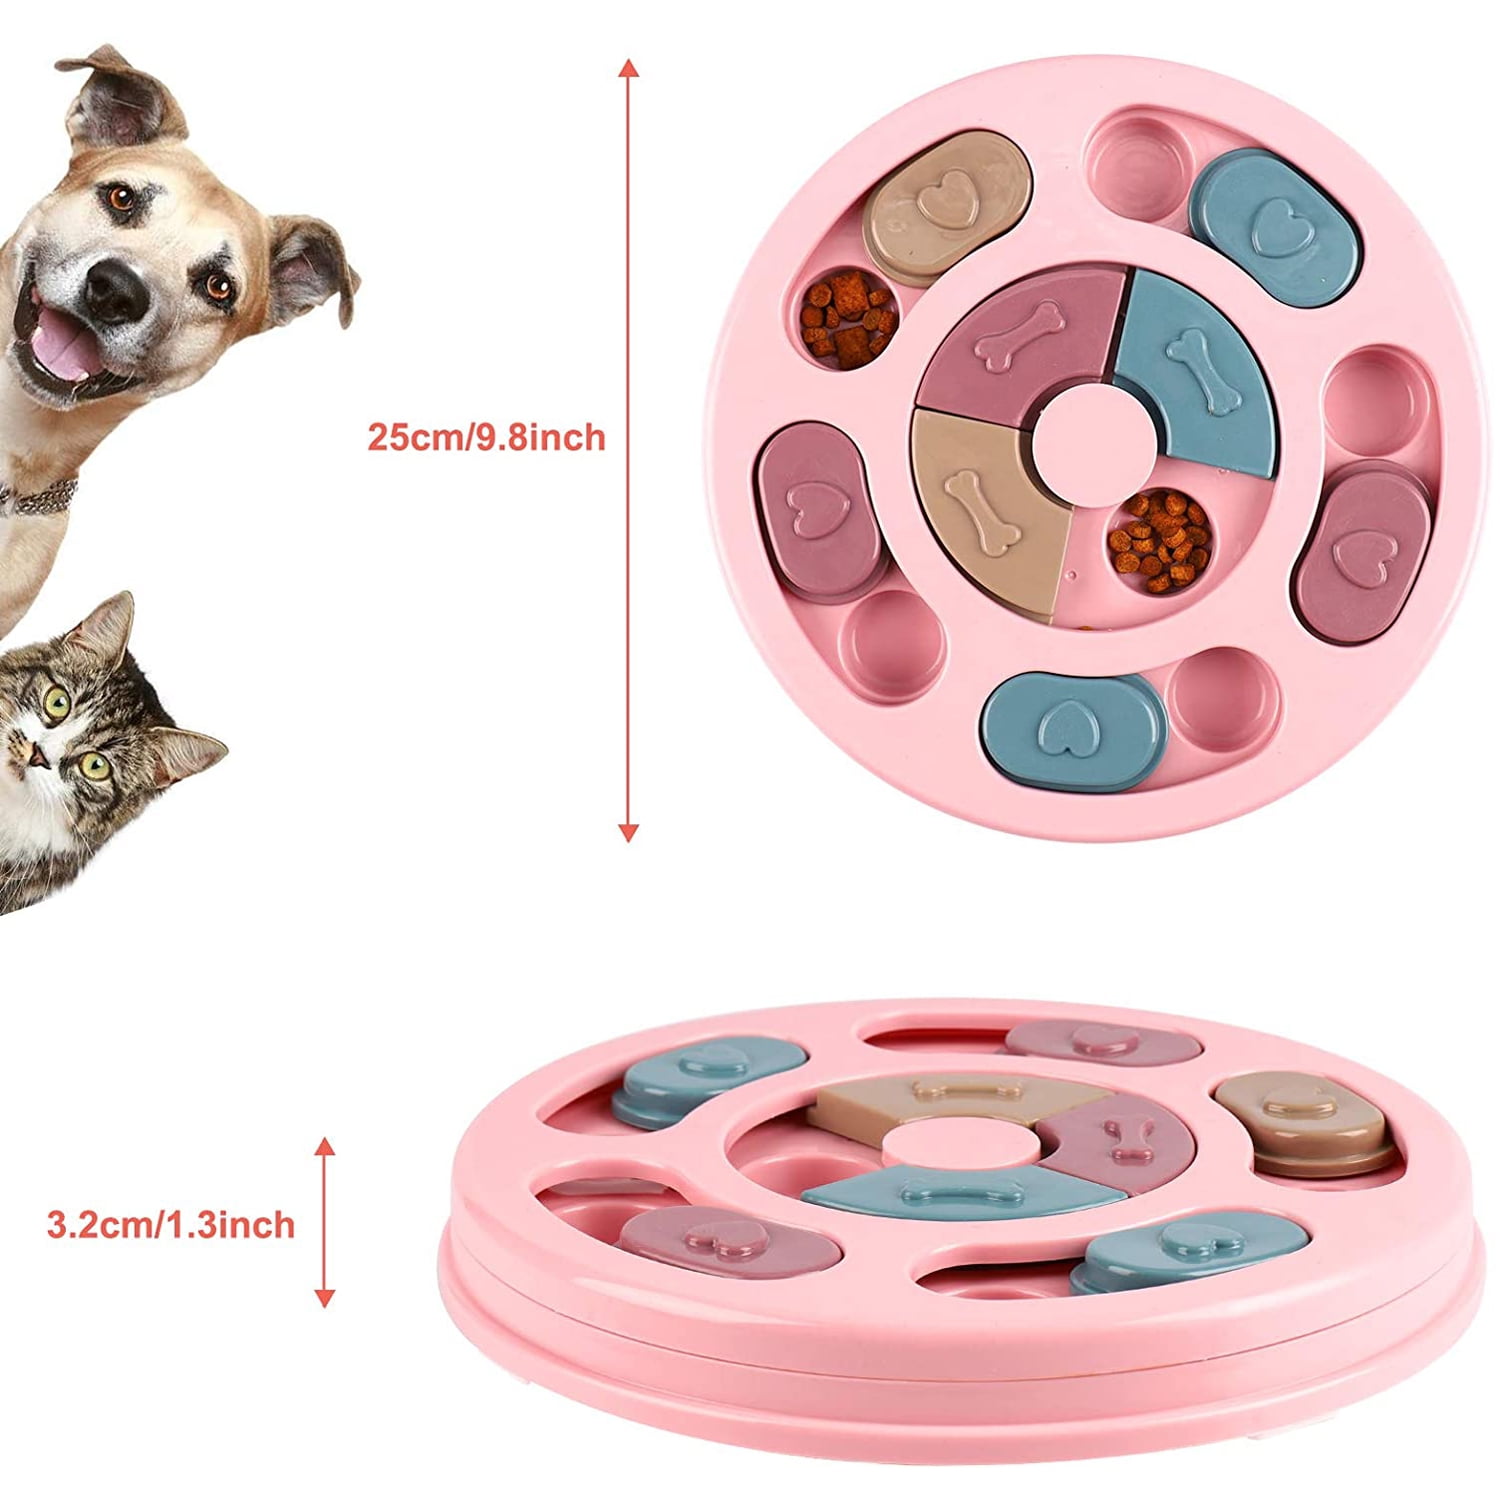 Benepaw Dog Puzzle Toys IQ Training Brain Stimulating Slow Feeding